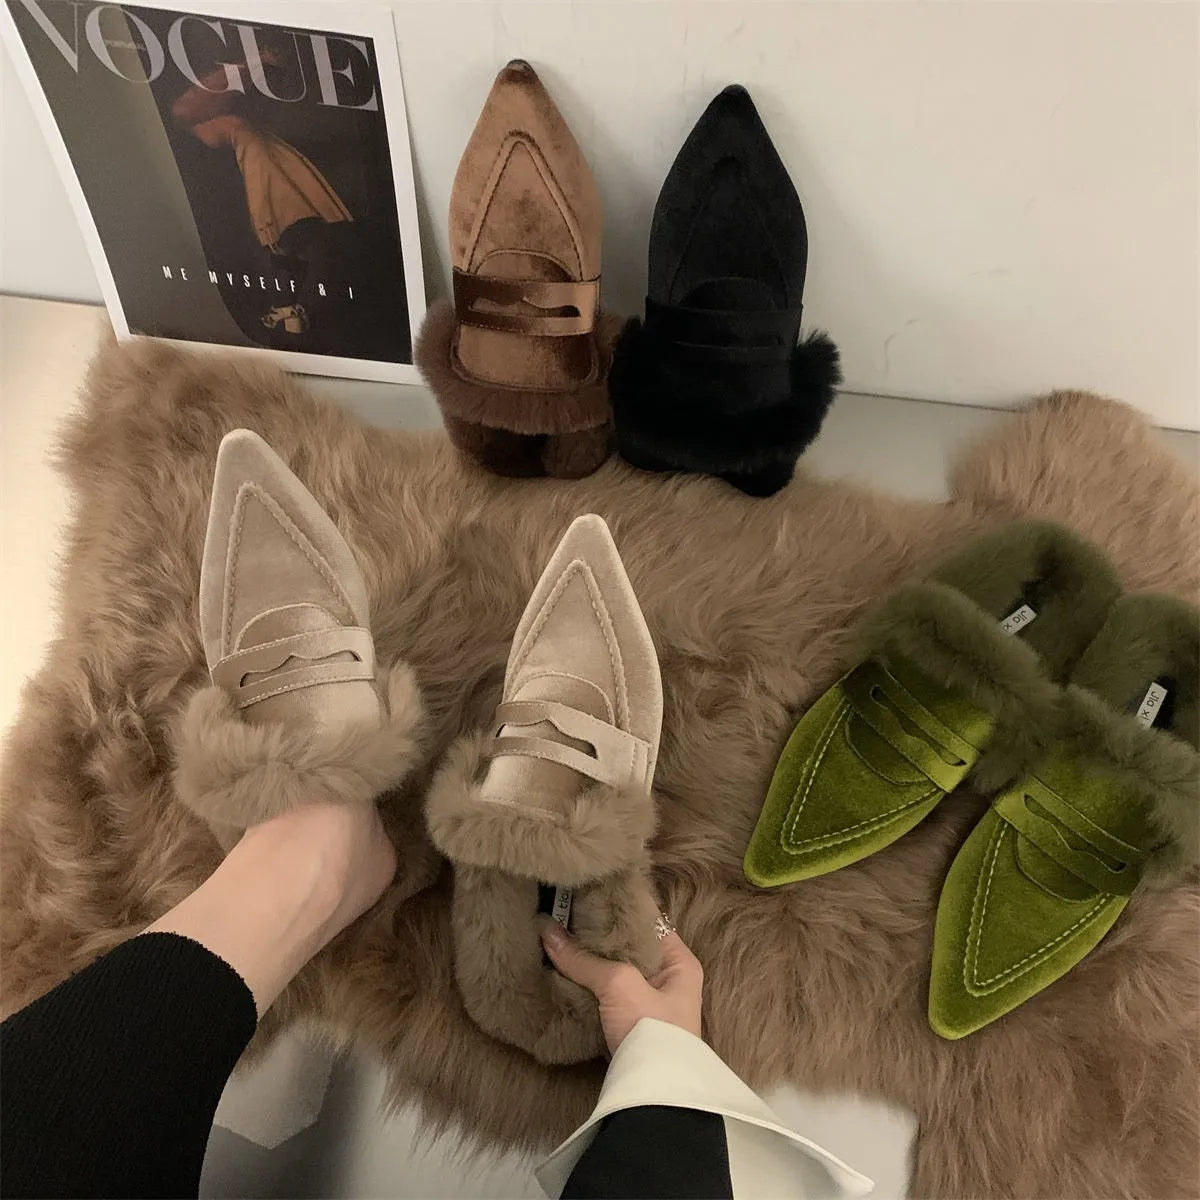 Brown Fur Slippers